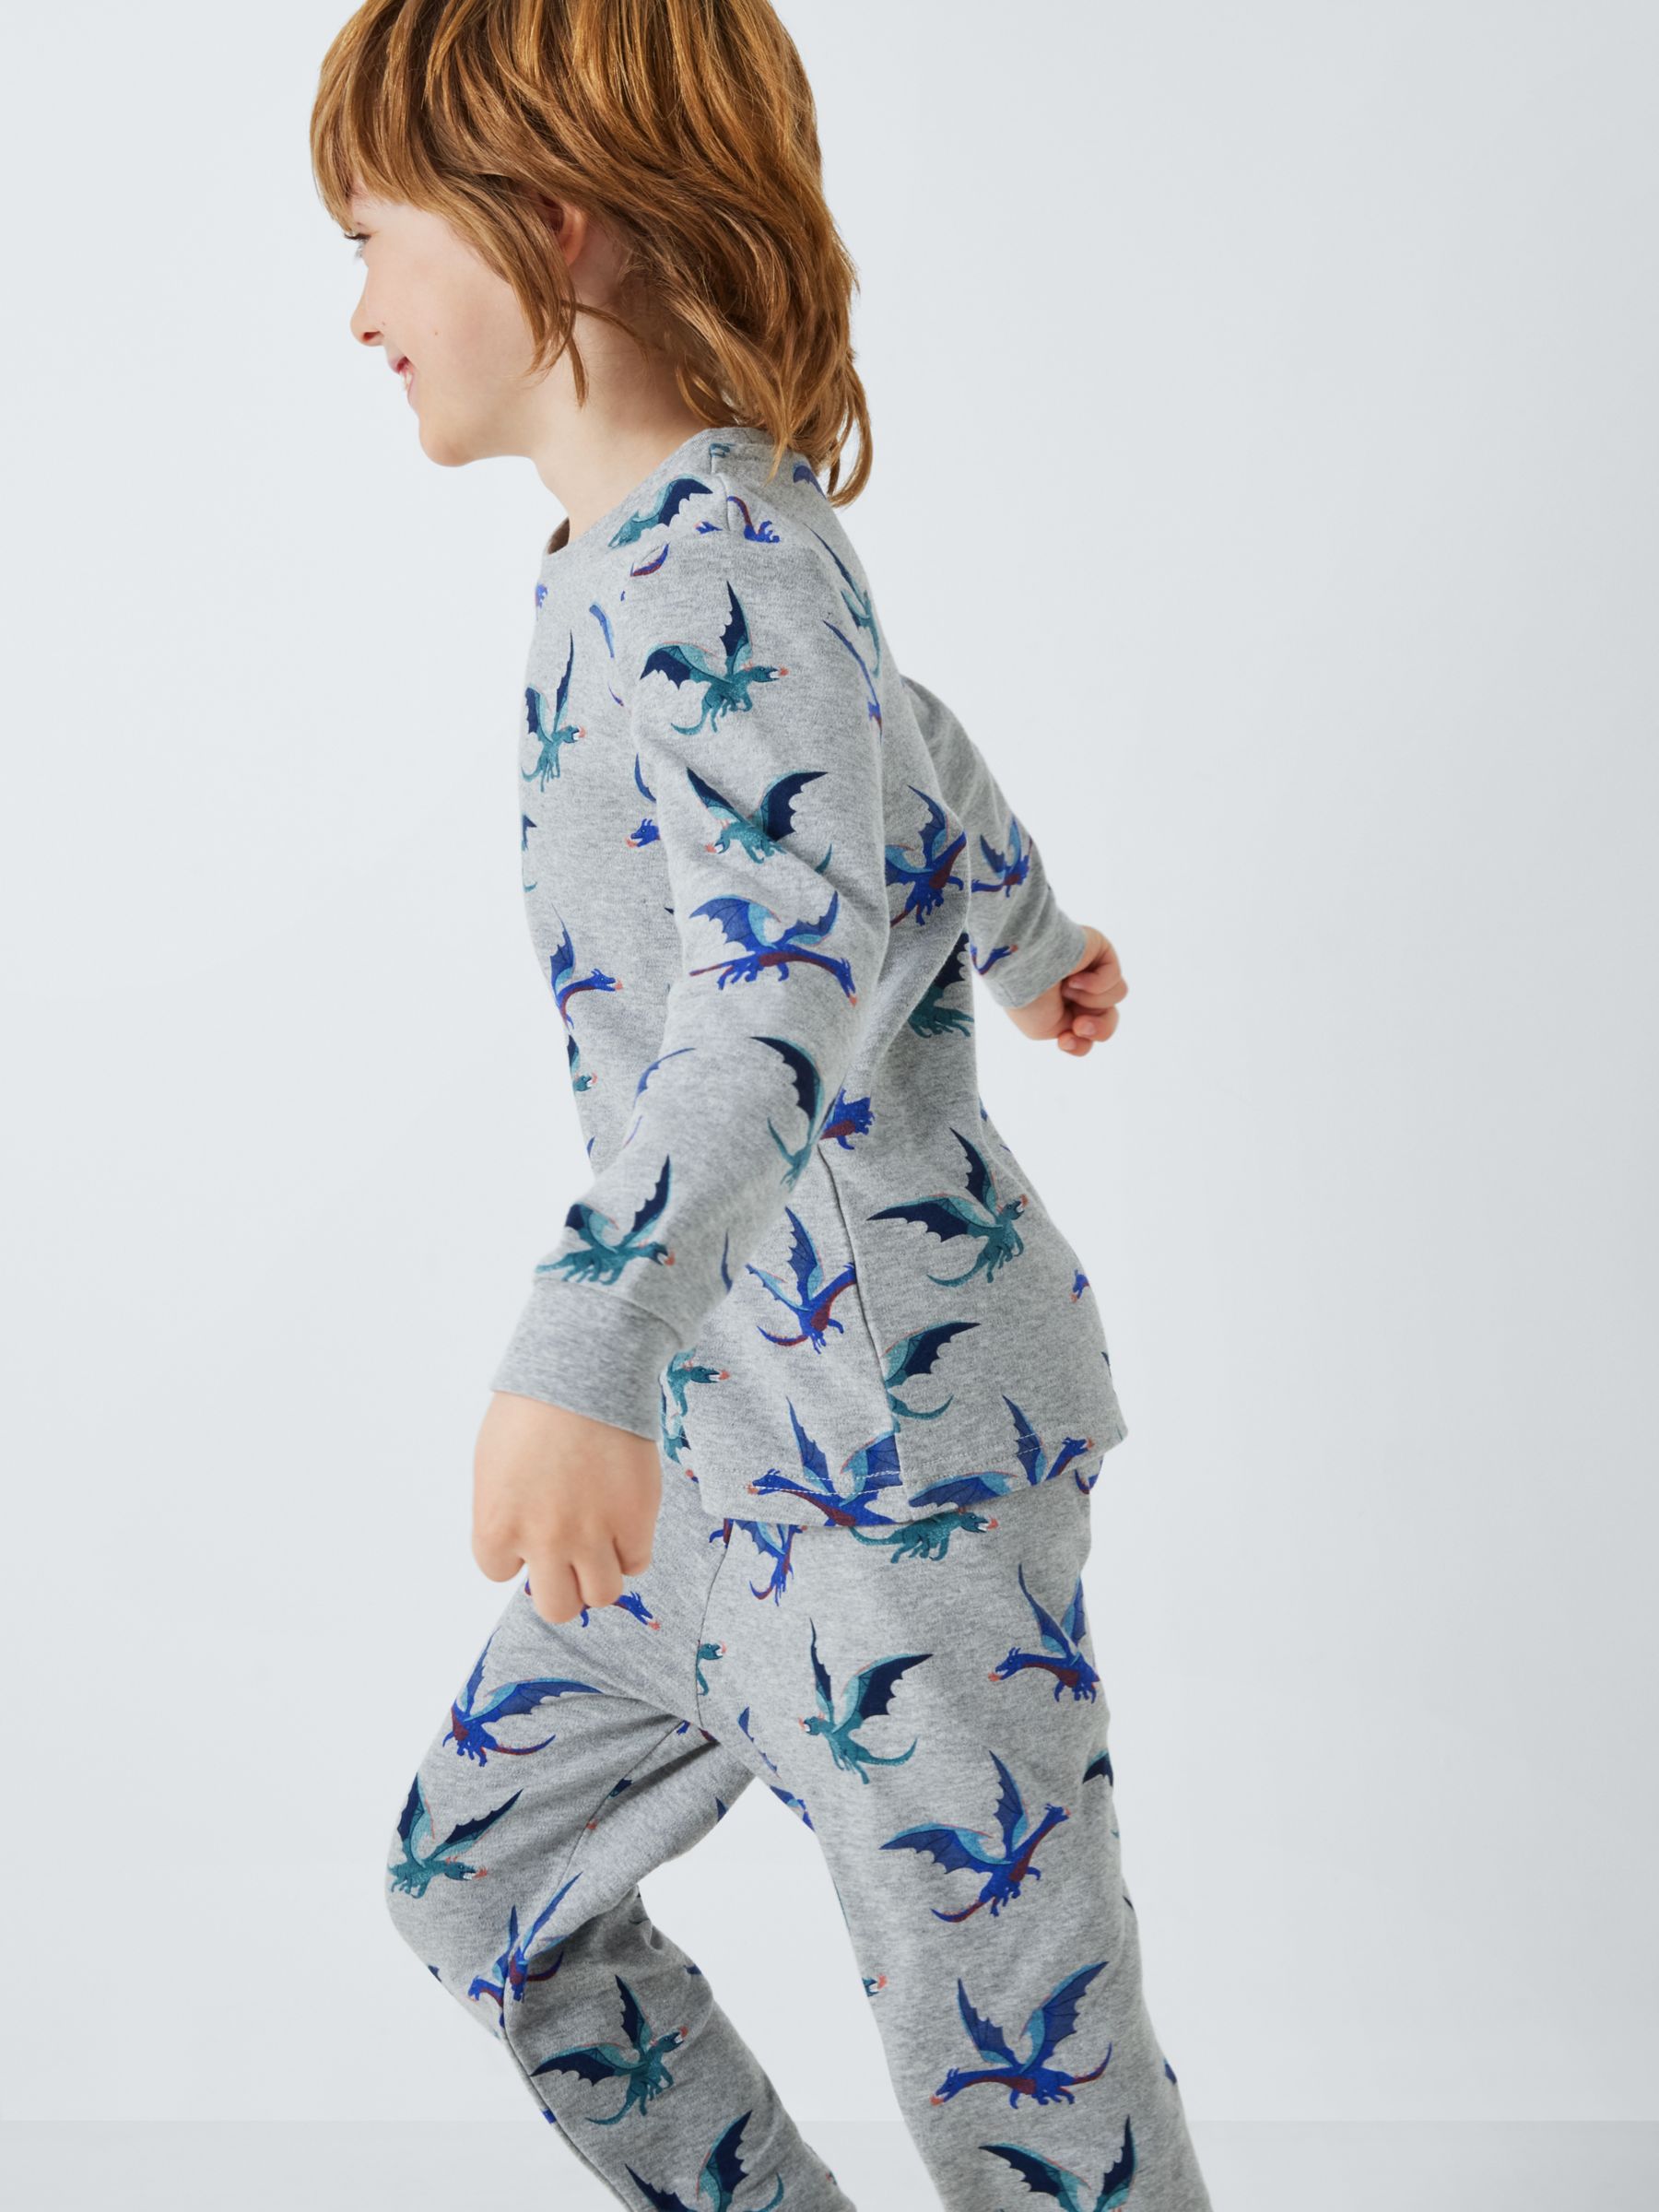 John Lewis Kids' Fiery Dragon Pyjamas, Pack of 2, Multi, 7 years